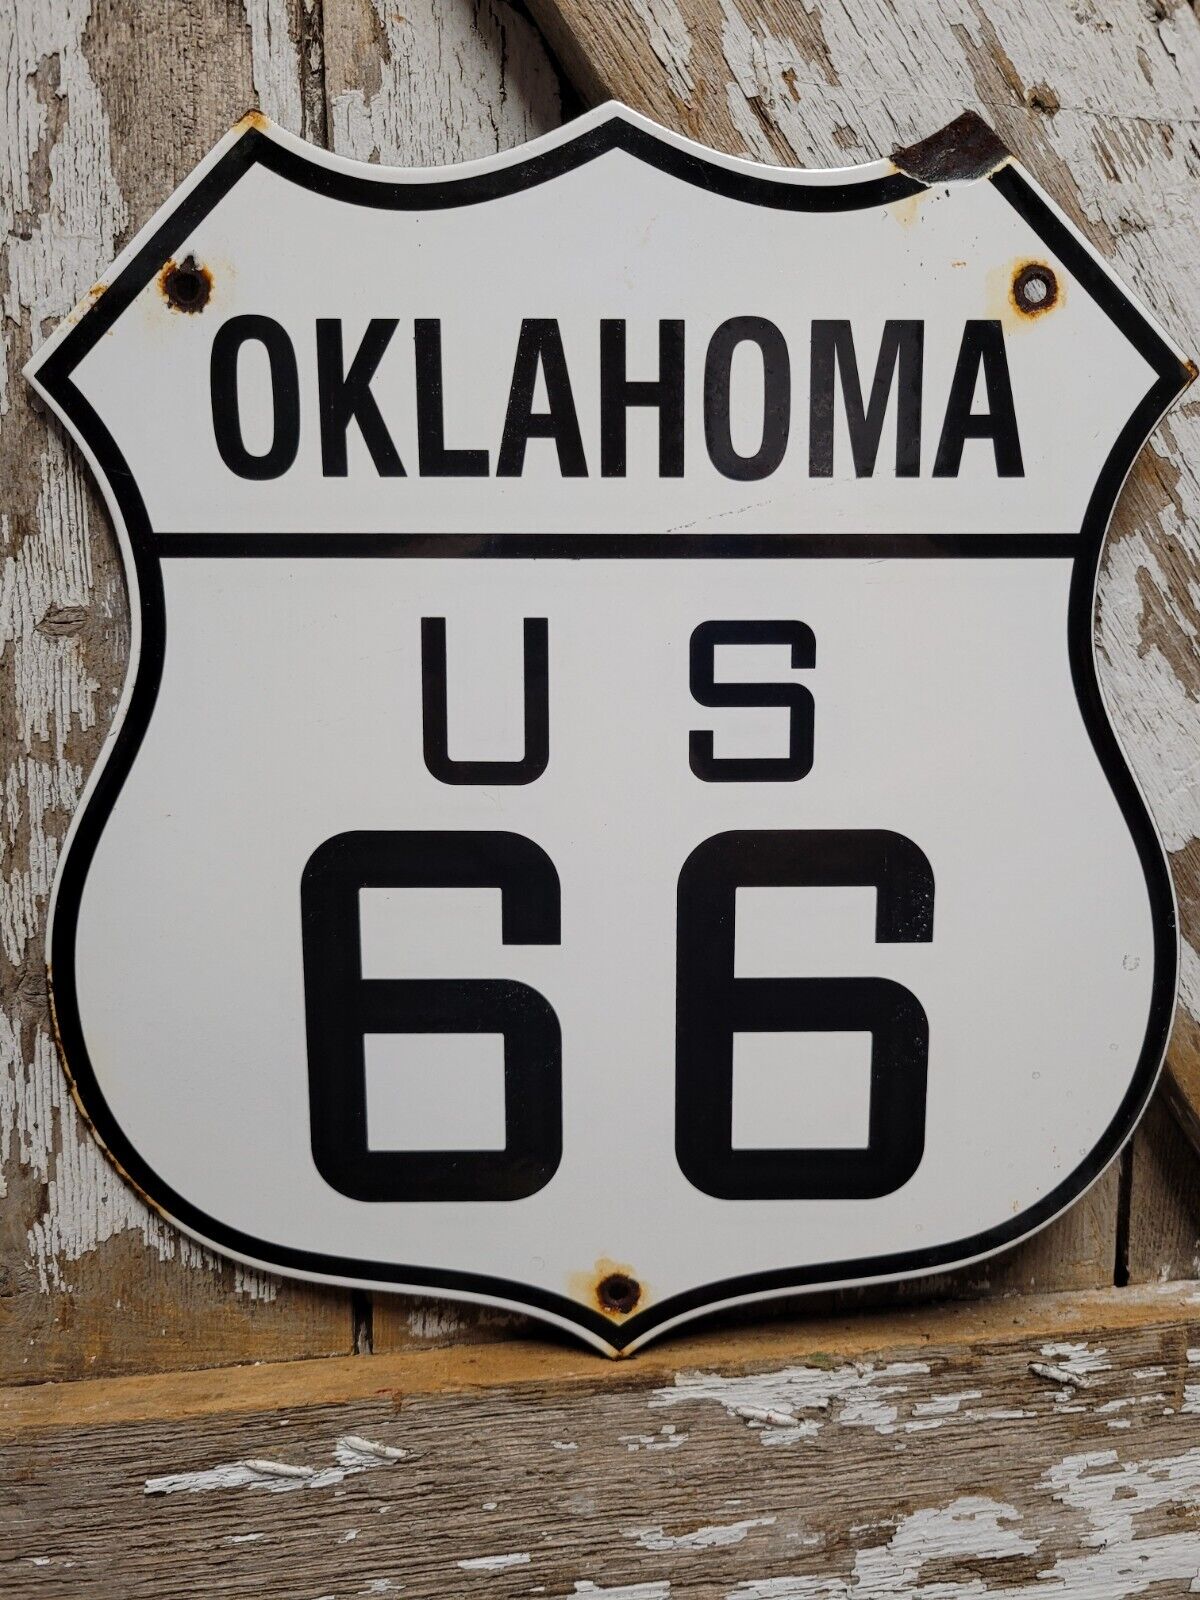 VINTAGE OKLAHOMA ROUTE 66 PORCELAIN SIGN US HIGHWAY ROAD TRANSIT SHIELD MARKER